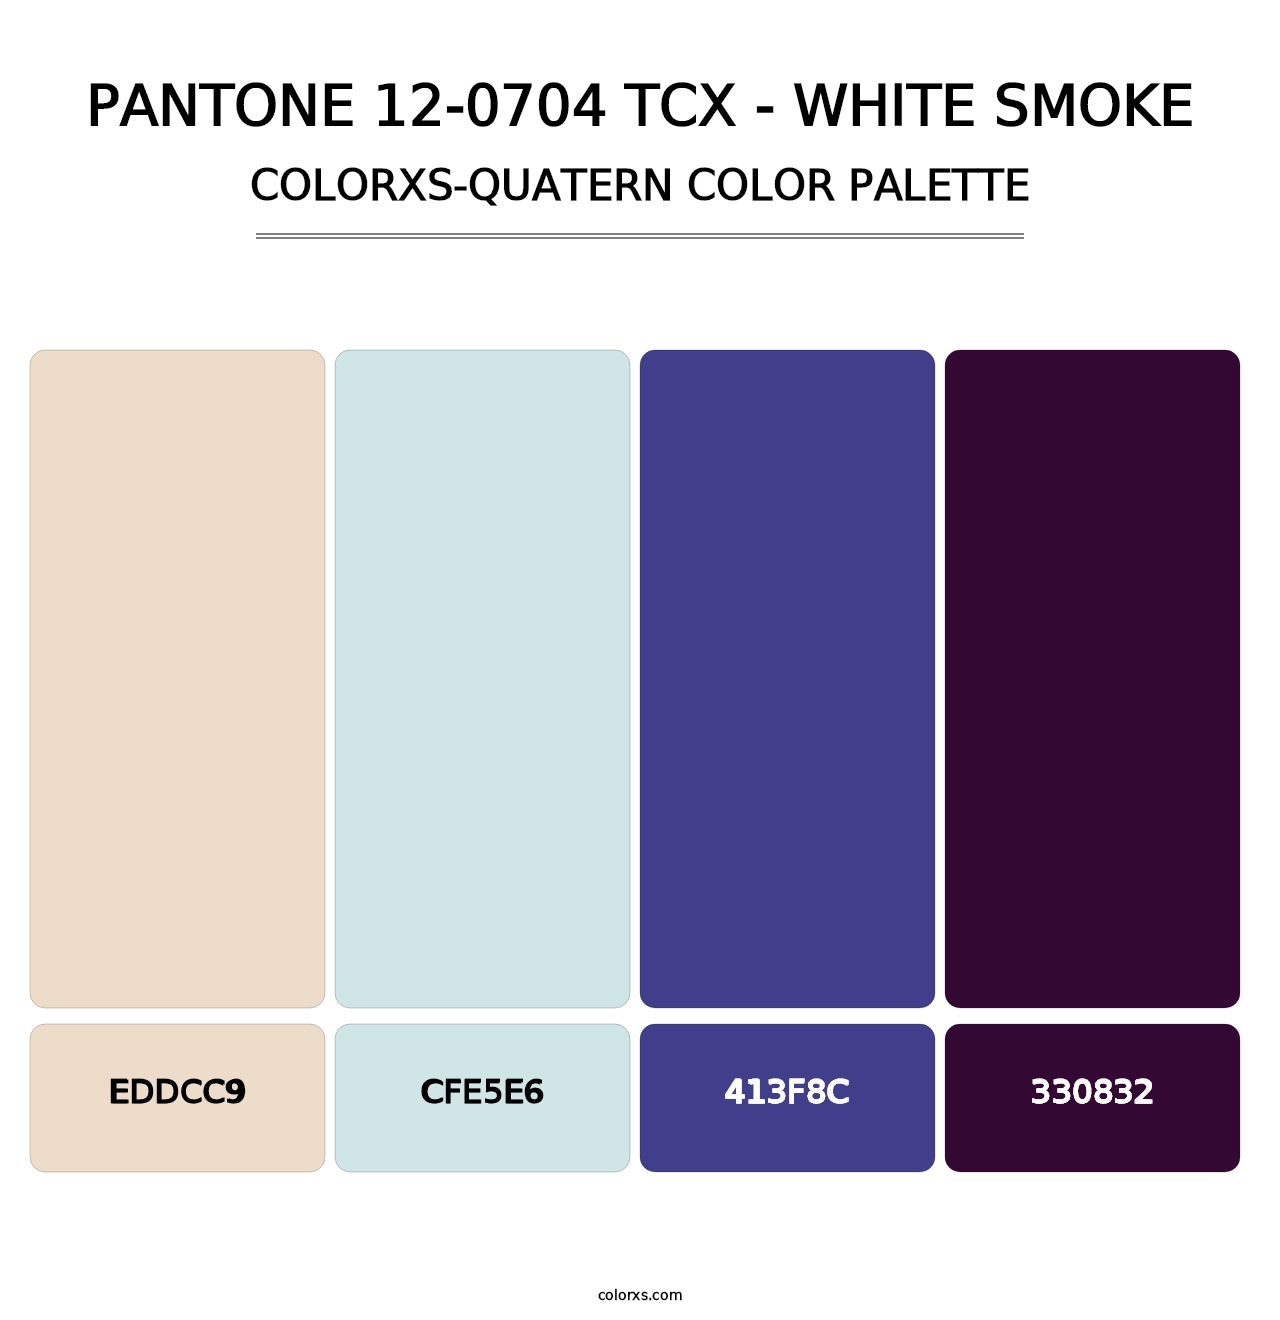 PANTONE 12-0704 TCX - White Smoke - Colorxs Quatern Palette